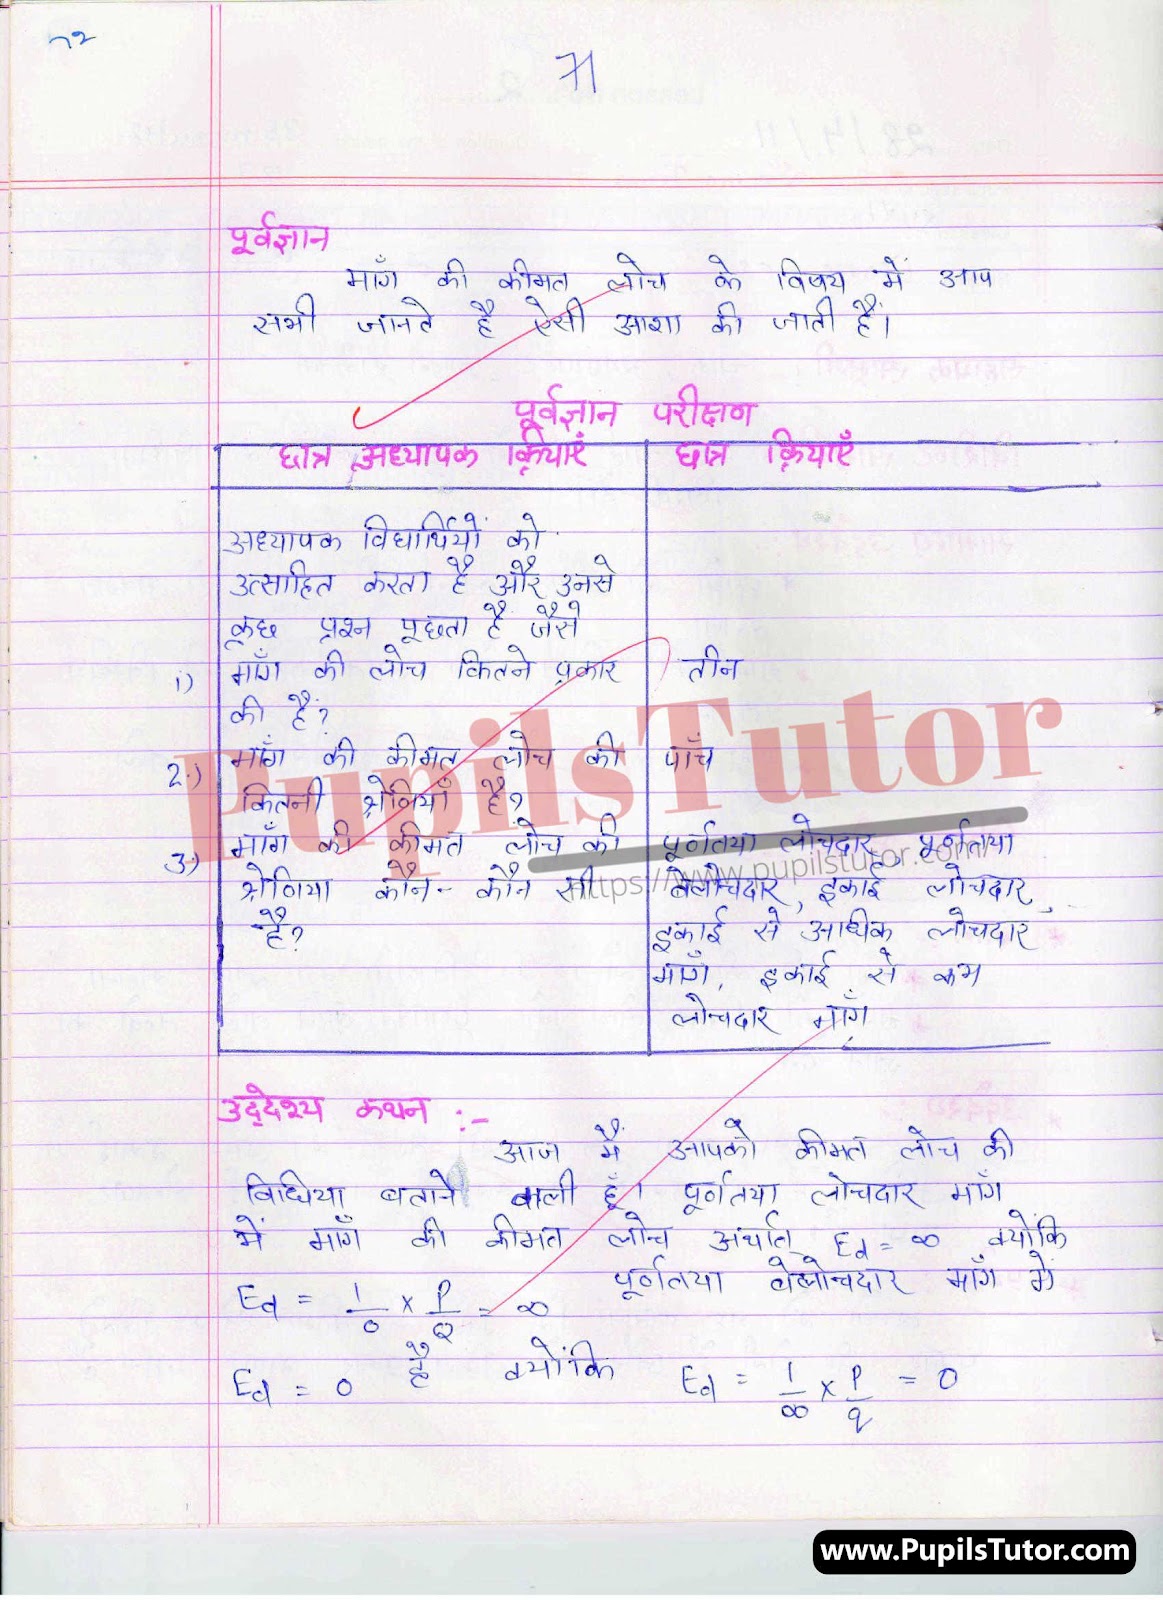 Real School Teaching  Skill Kimat Loch Lesson Plan For B.Ed And Deled In Hindi Free Download PDF And PPT (Power Point Presentation And Slides) | बीएड और डीएलएड के लिए स्कूल शिक्षण कौशल पर कीमत लोच कक्षा 11 और 12 के लेसन प्लान की पीडीऍफ़ और पीपीटी फ्री में डाउनलोड करे| – (Page And PDF Number 2) – pupilstutor